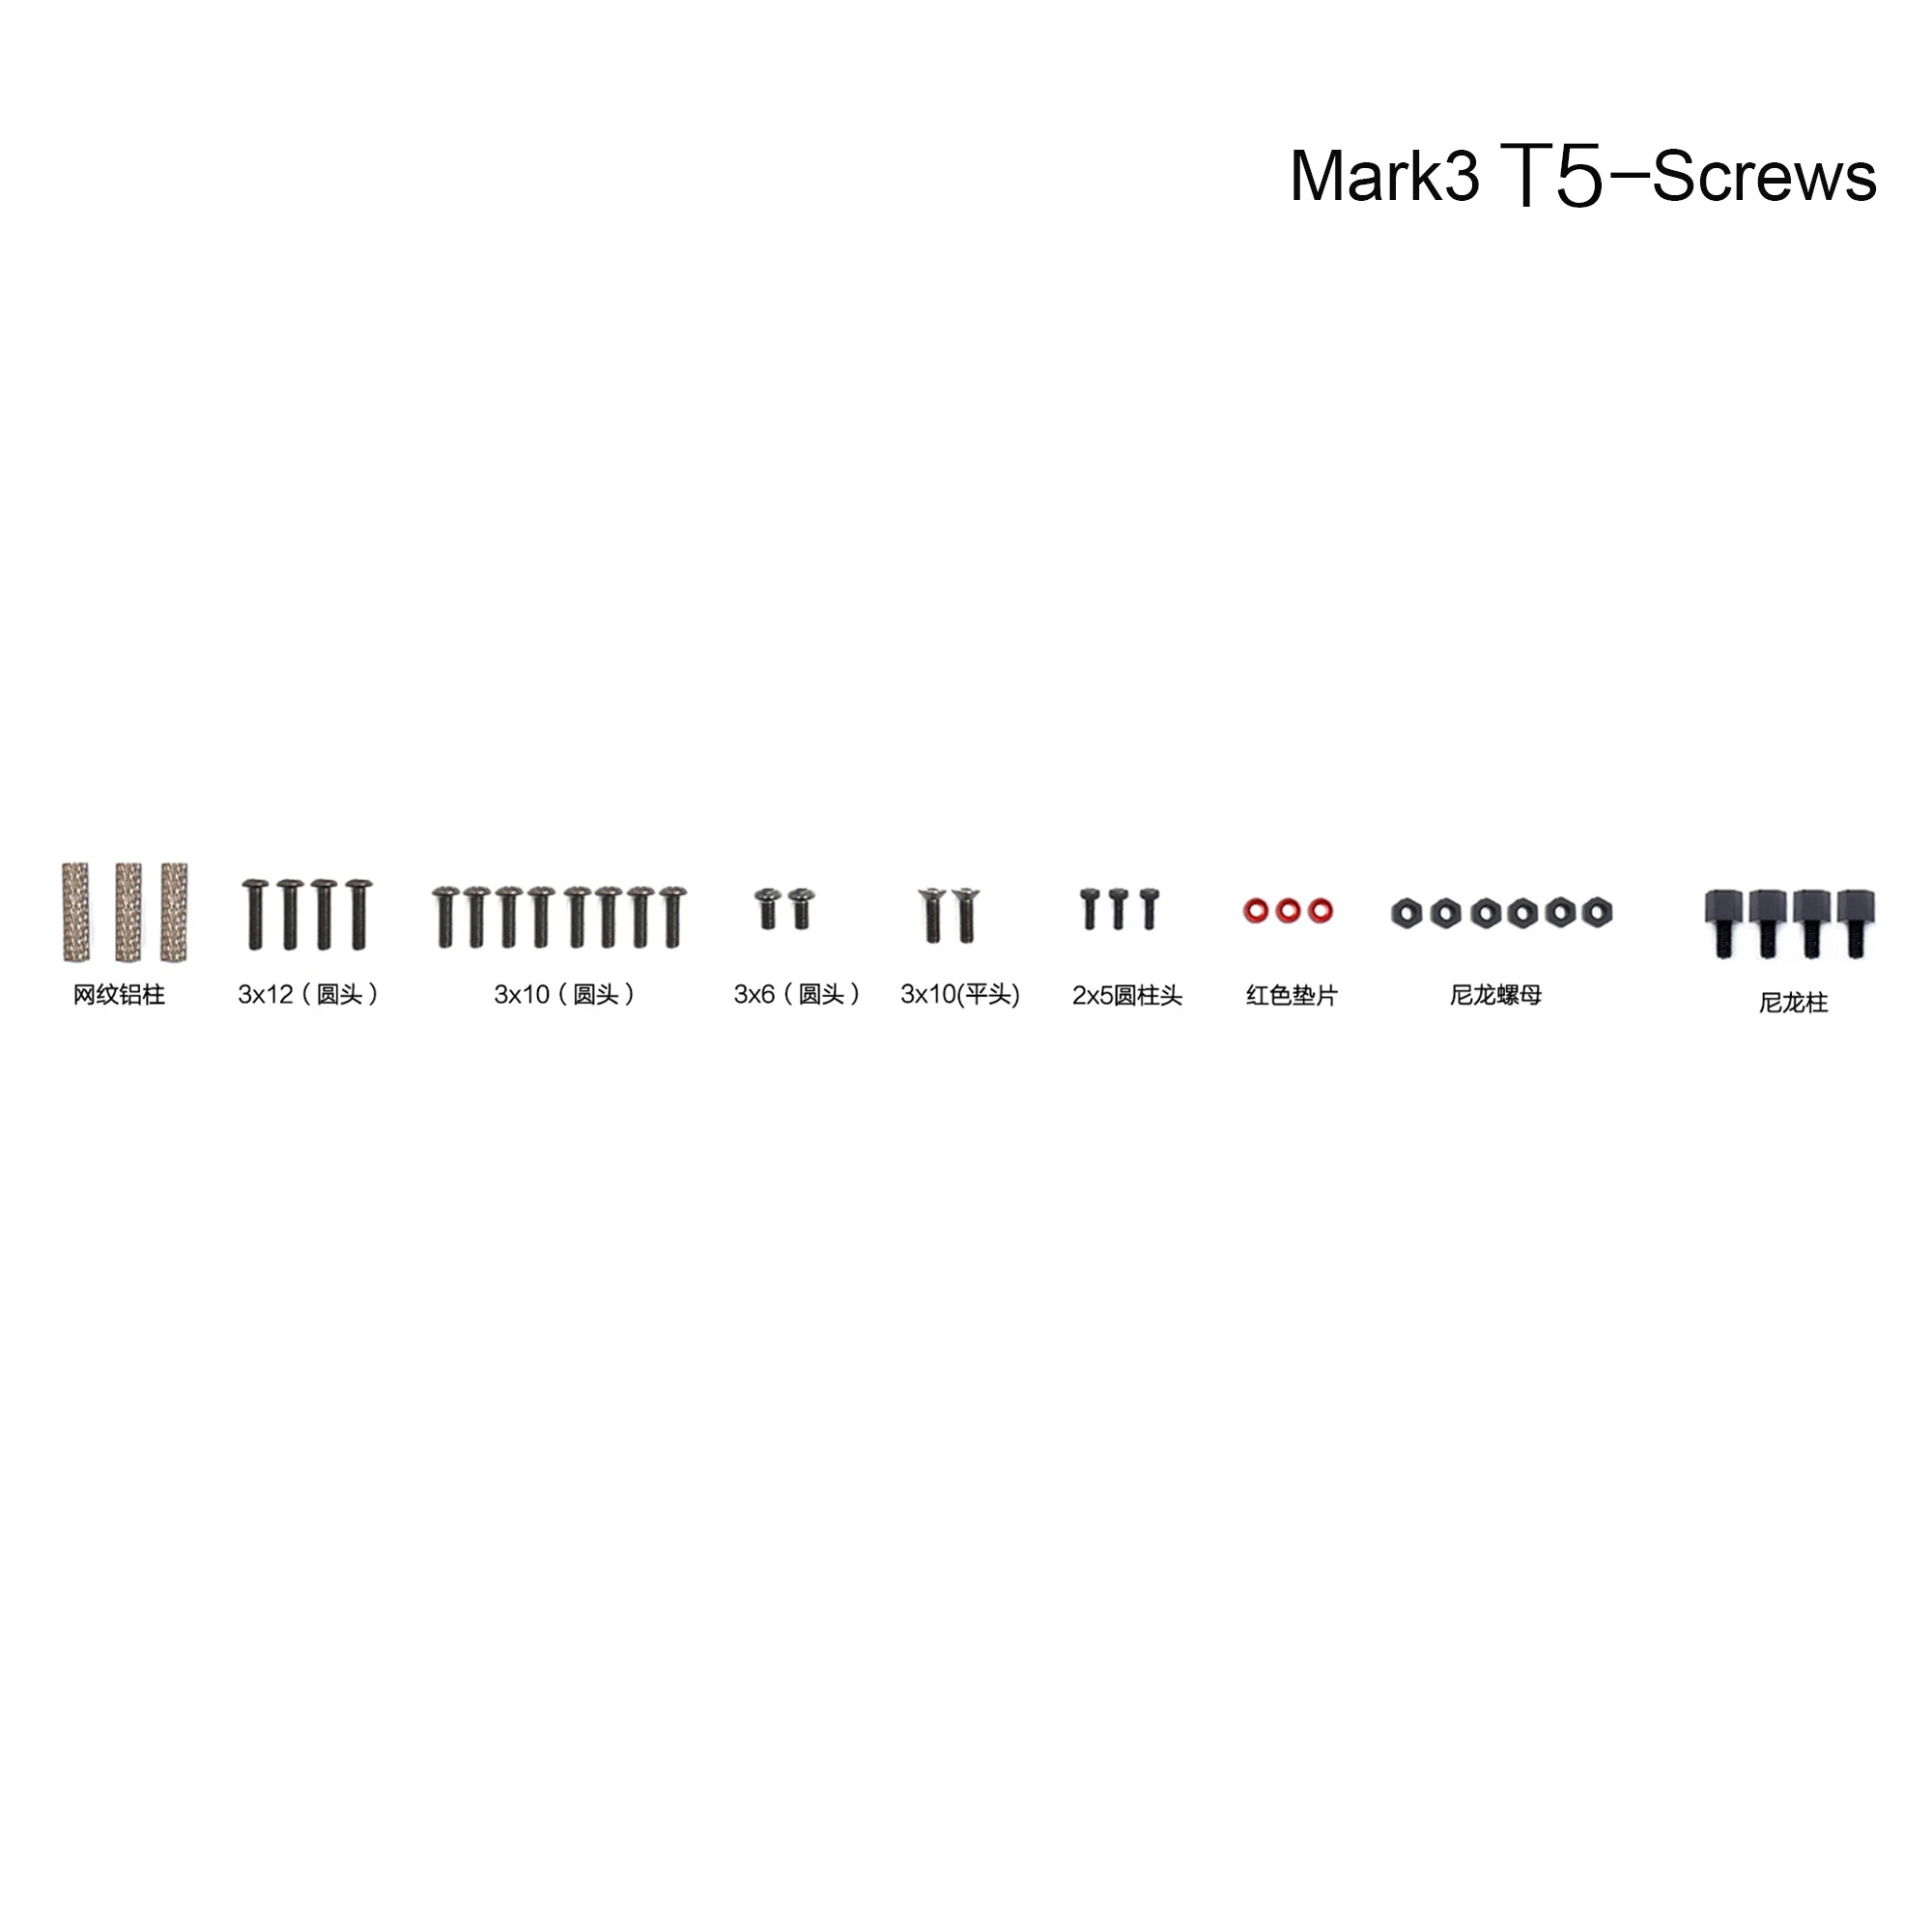 GEPRC GEP-Mark3 рамка аксессуары части H5/T5/HB56 рамка Рычаг/Нижняя пластина/Винты для запасных частей GEP-Mark3 рамка - Цвет: 1 set T5 screws